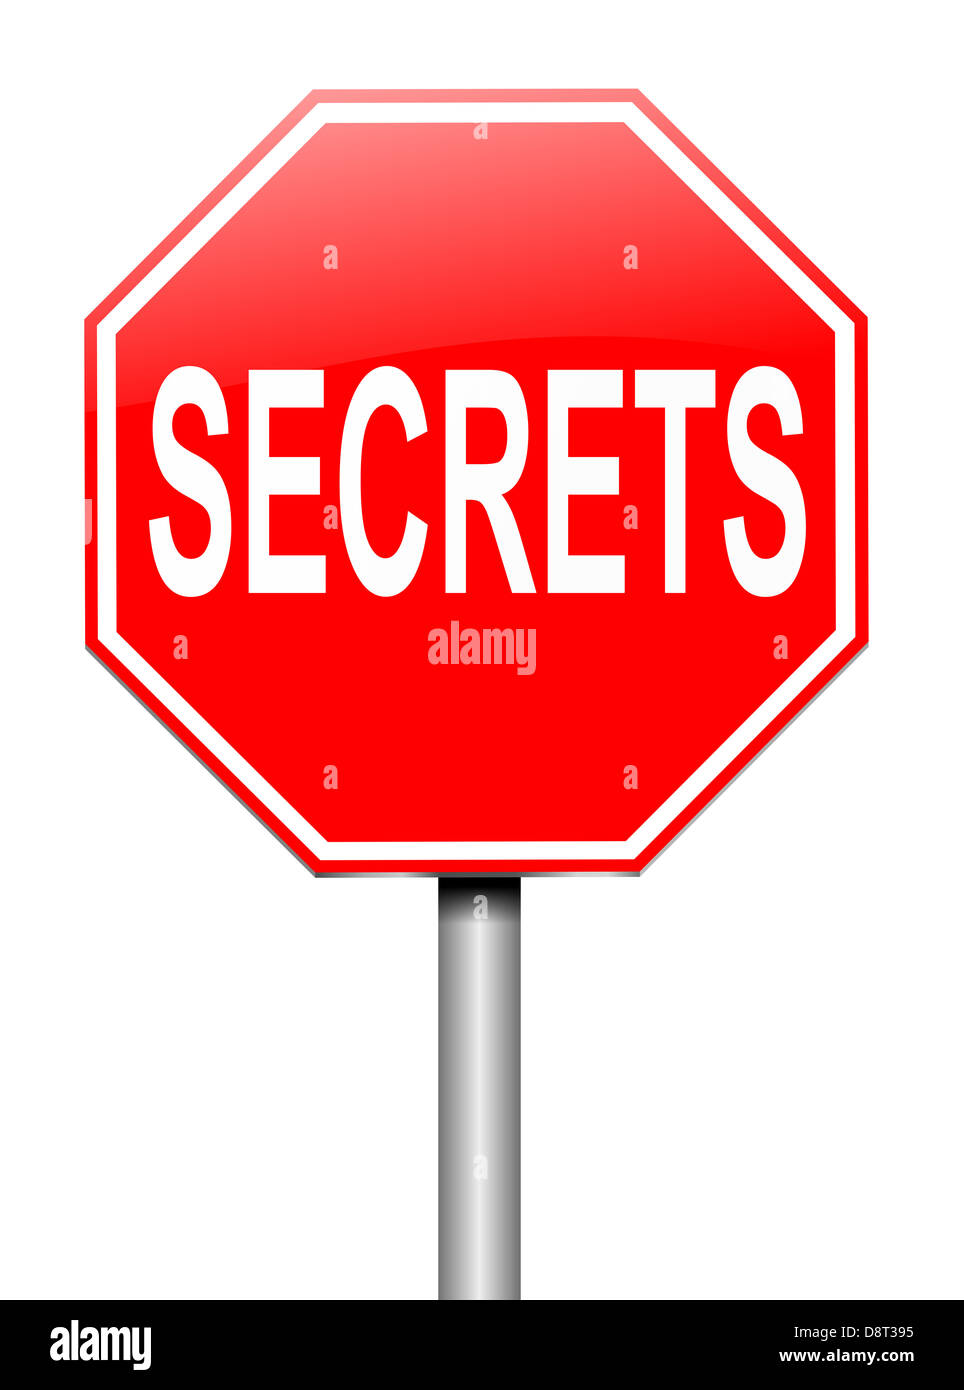 Secrets. Banque D'Images